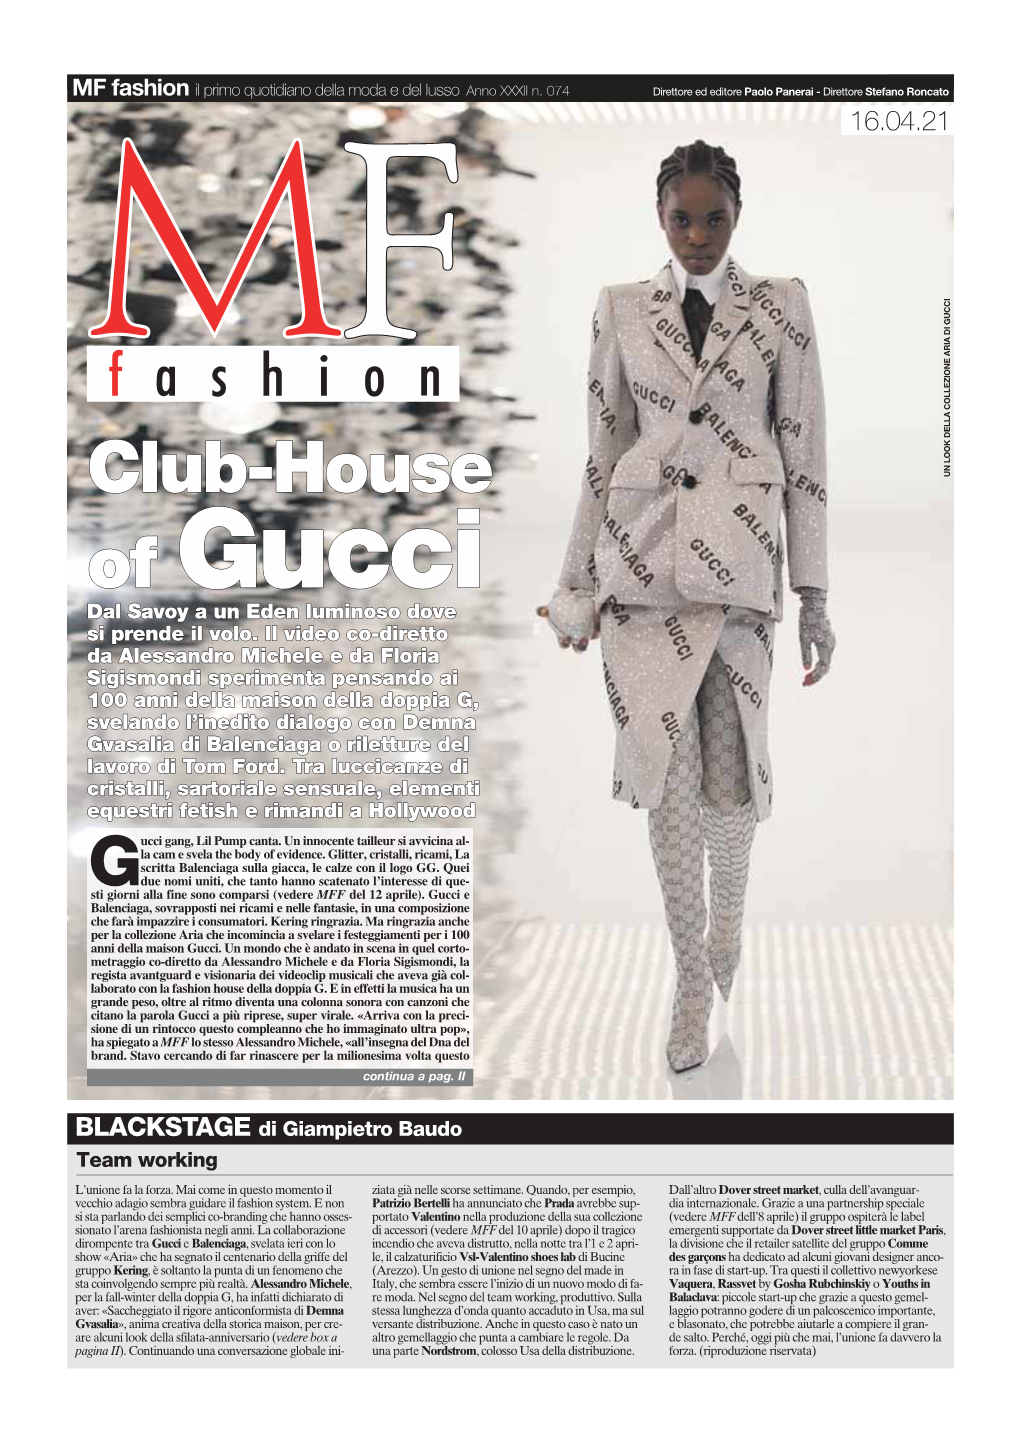 Of Gucci, Crasi Vira- Le, Collisione Digitale Tra Il Social Del Momento Clubhouse Marchio, Questo Nome, Questa Saga